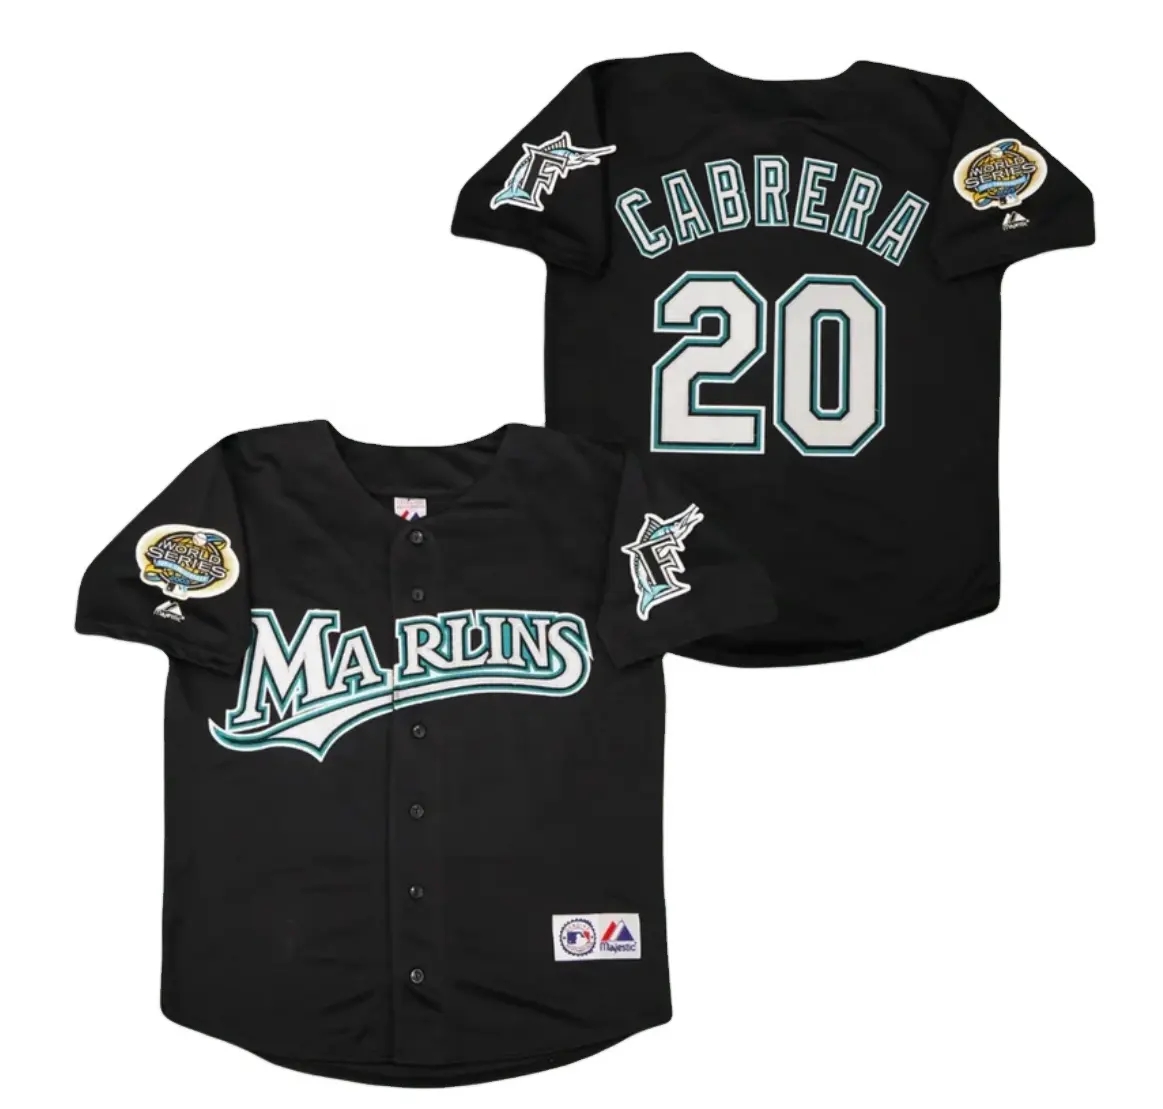 Miguel Cabrera Miami Florida Marlins 2003 maglia da Baseball ufficiale classica del giocatore in Serie del mondo